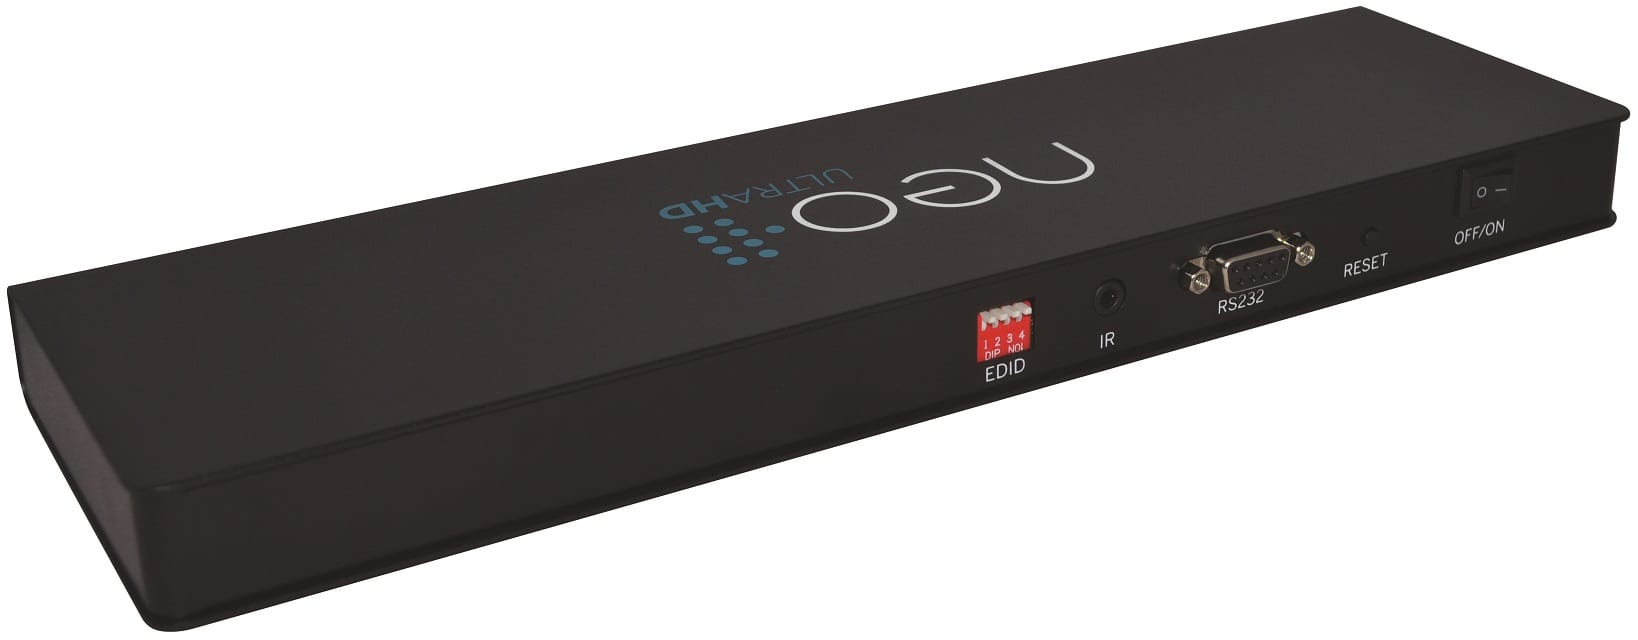 Pulse Eight neo:1×8 HDMI splitter - achteraanzicht - HDMI splitter